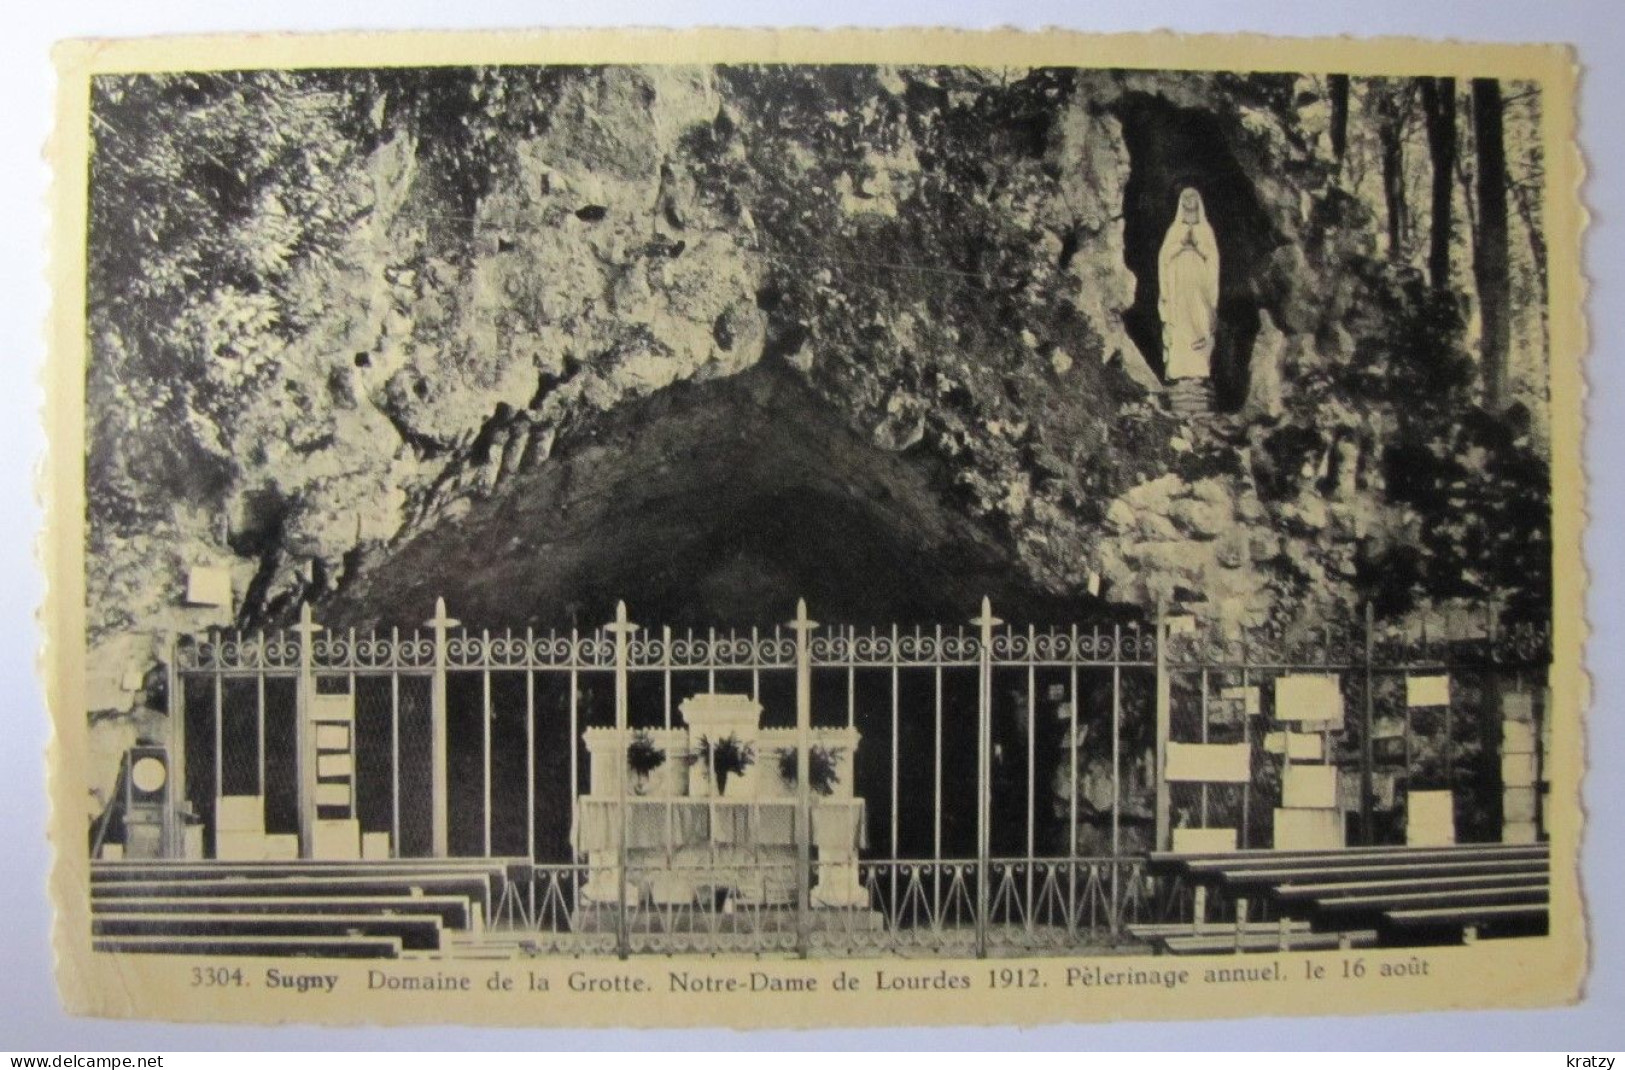 BELGIQUE - NAMUR - VRESSE-SUR-SEMOIS - SUGNY - Domaine De La Grotte De Notre-Dame De Lourdes - 1957 - Vresse-sur-Semois